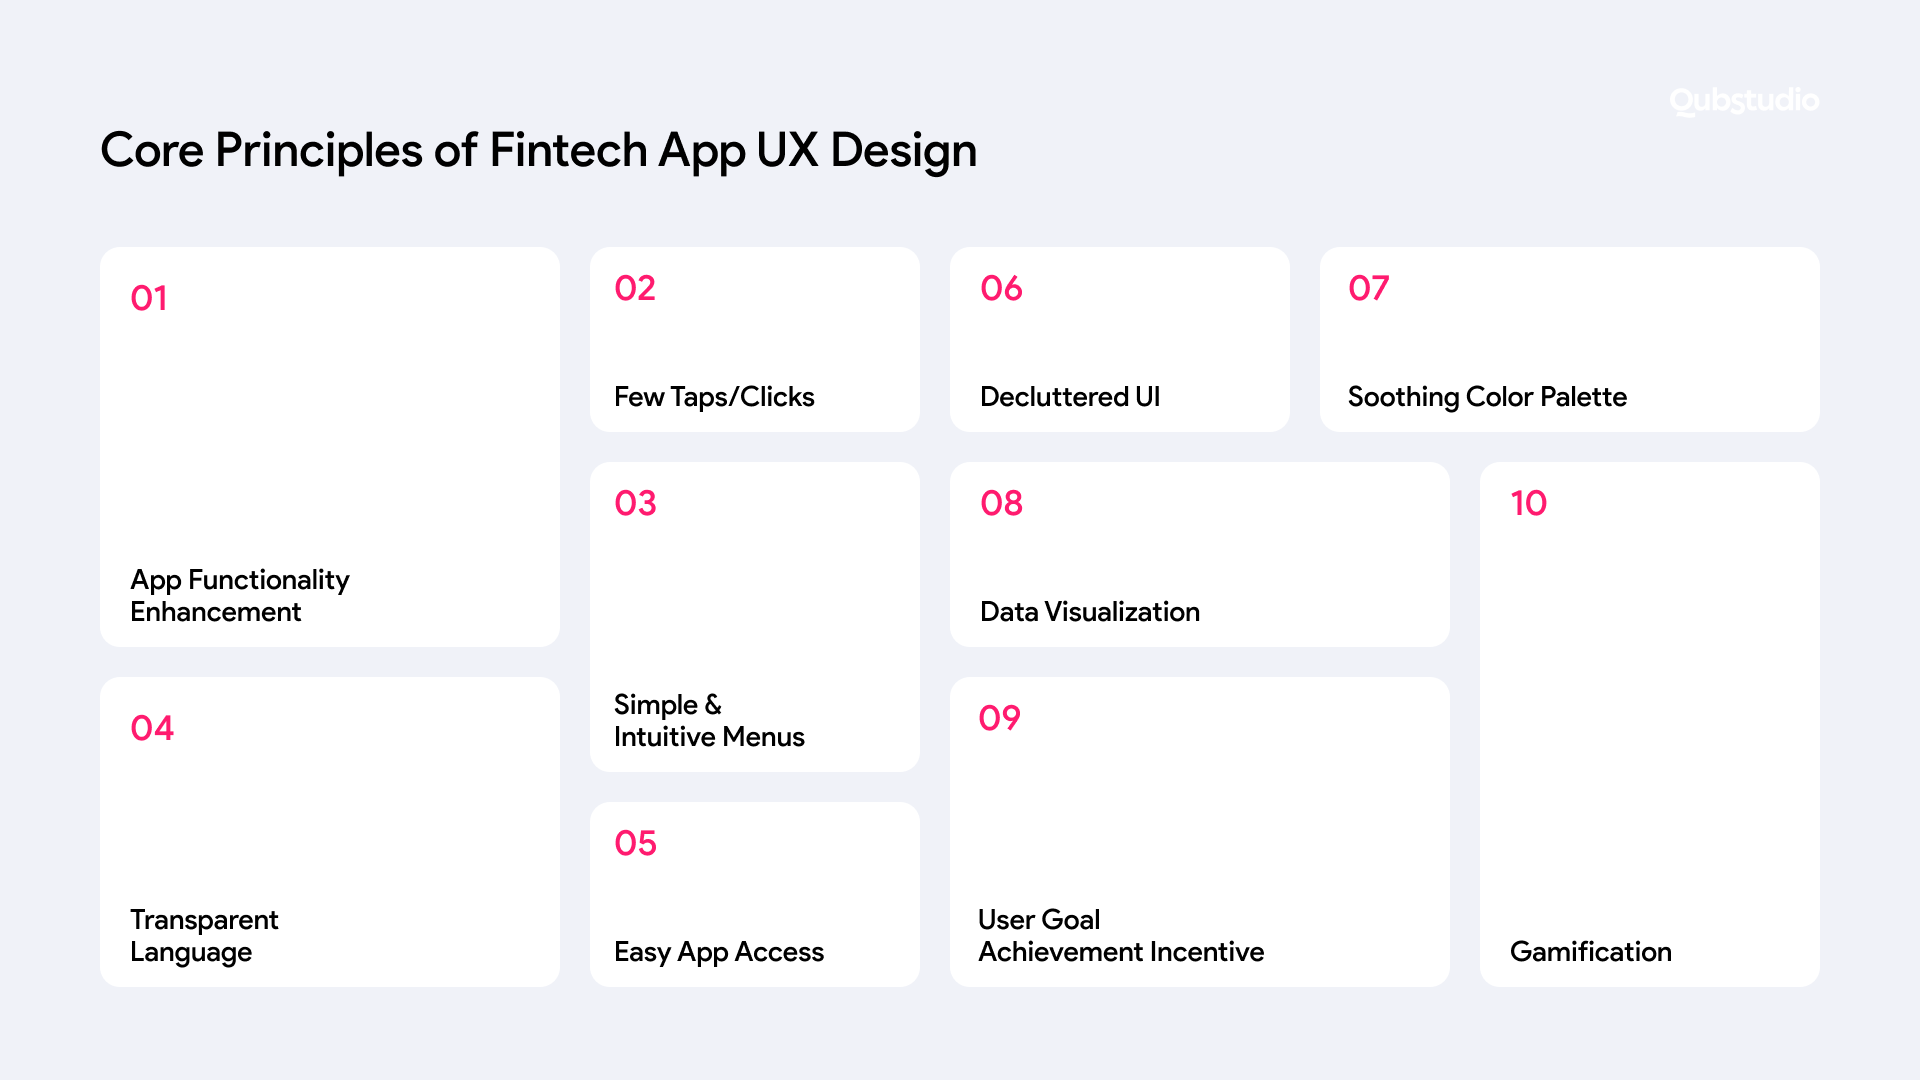 Core Principles of Fintech App UX Design